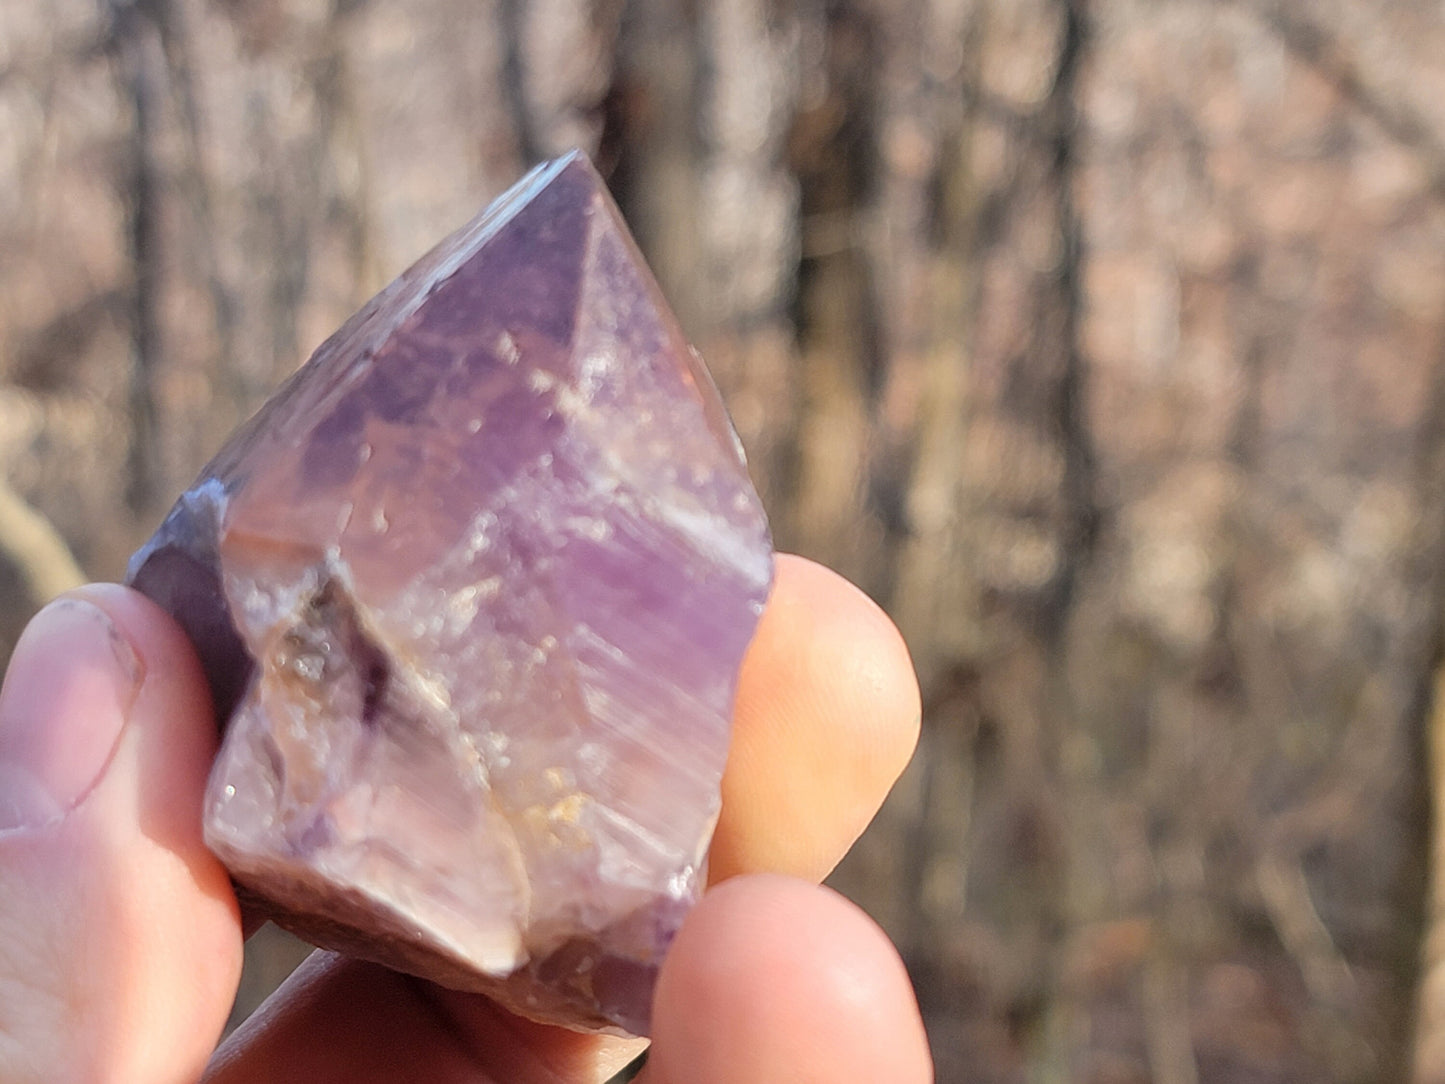 Raw Thunder Bay Amethyst || Raw Amethyst Crystal || Hematite Capped Amethyst